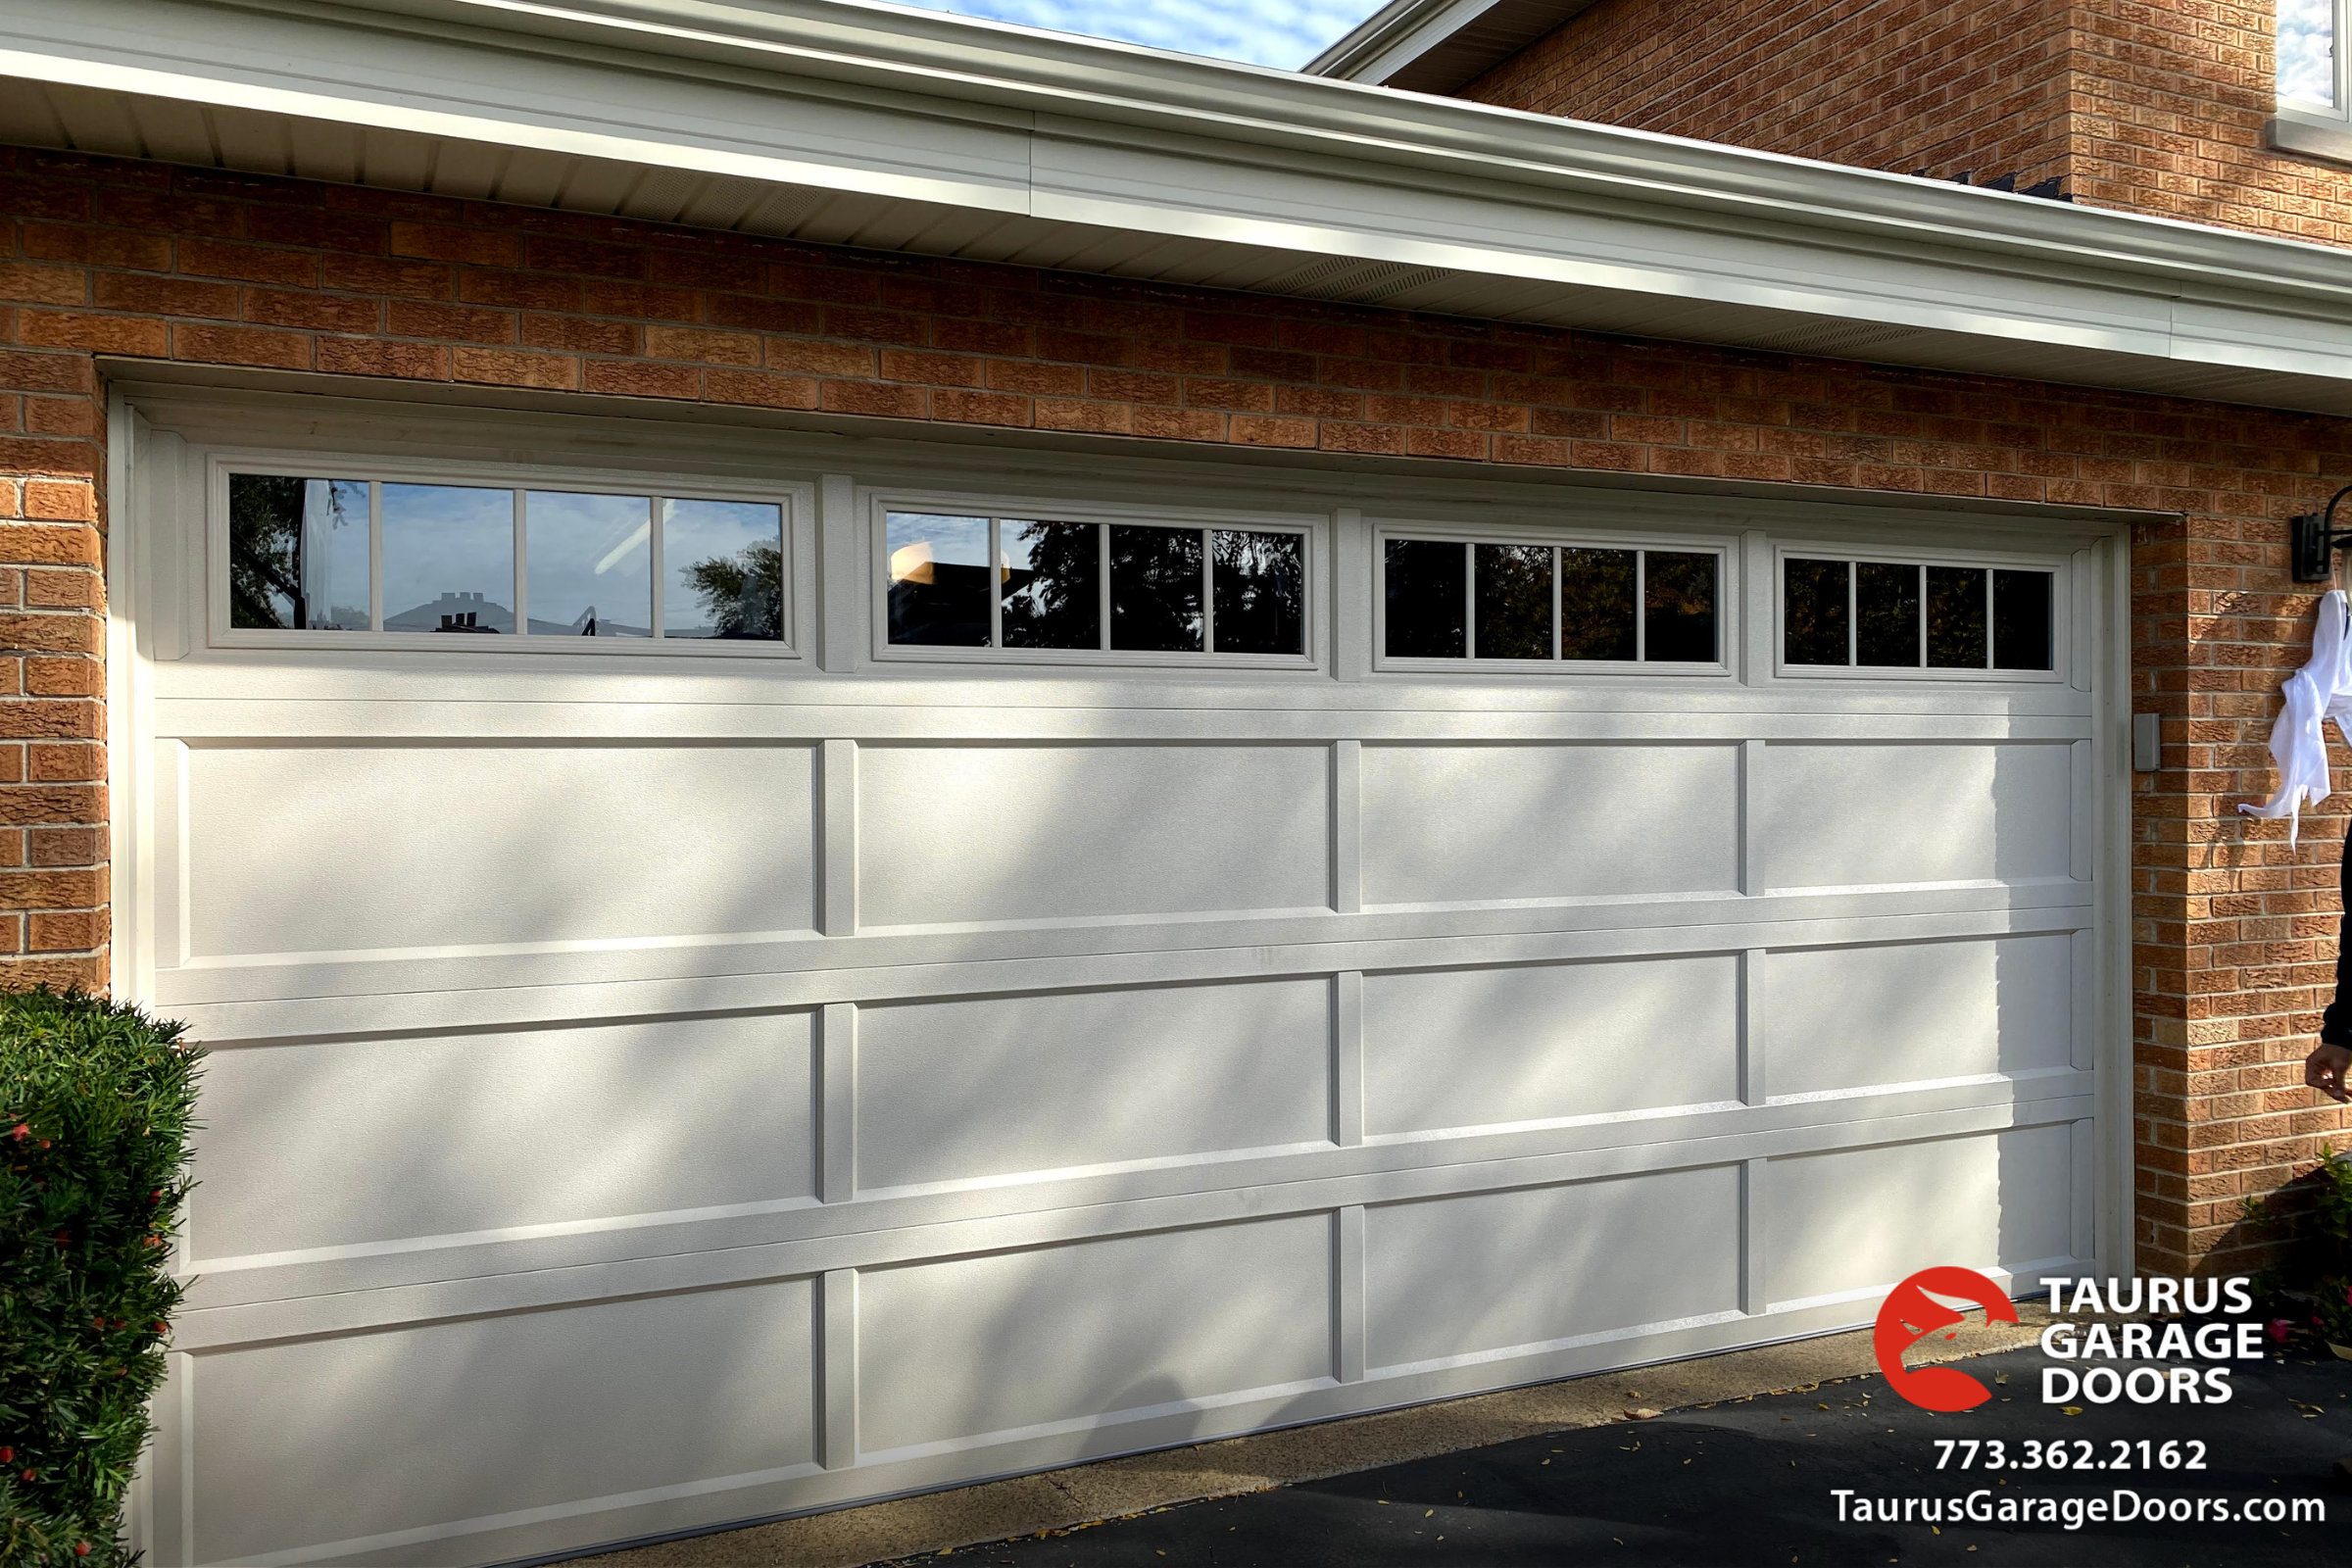 steel-garage-door-recessed-panel-in-almond-color-with-windows